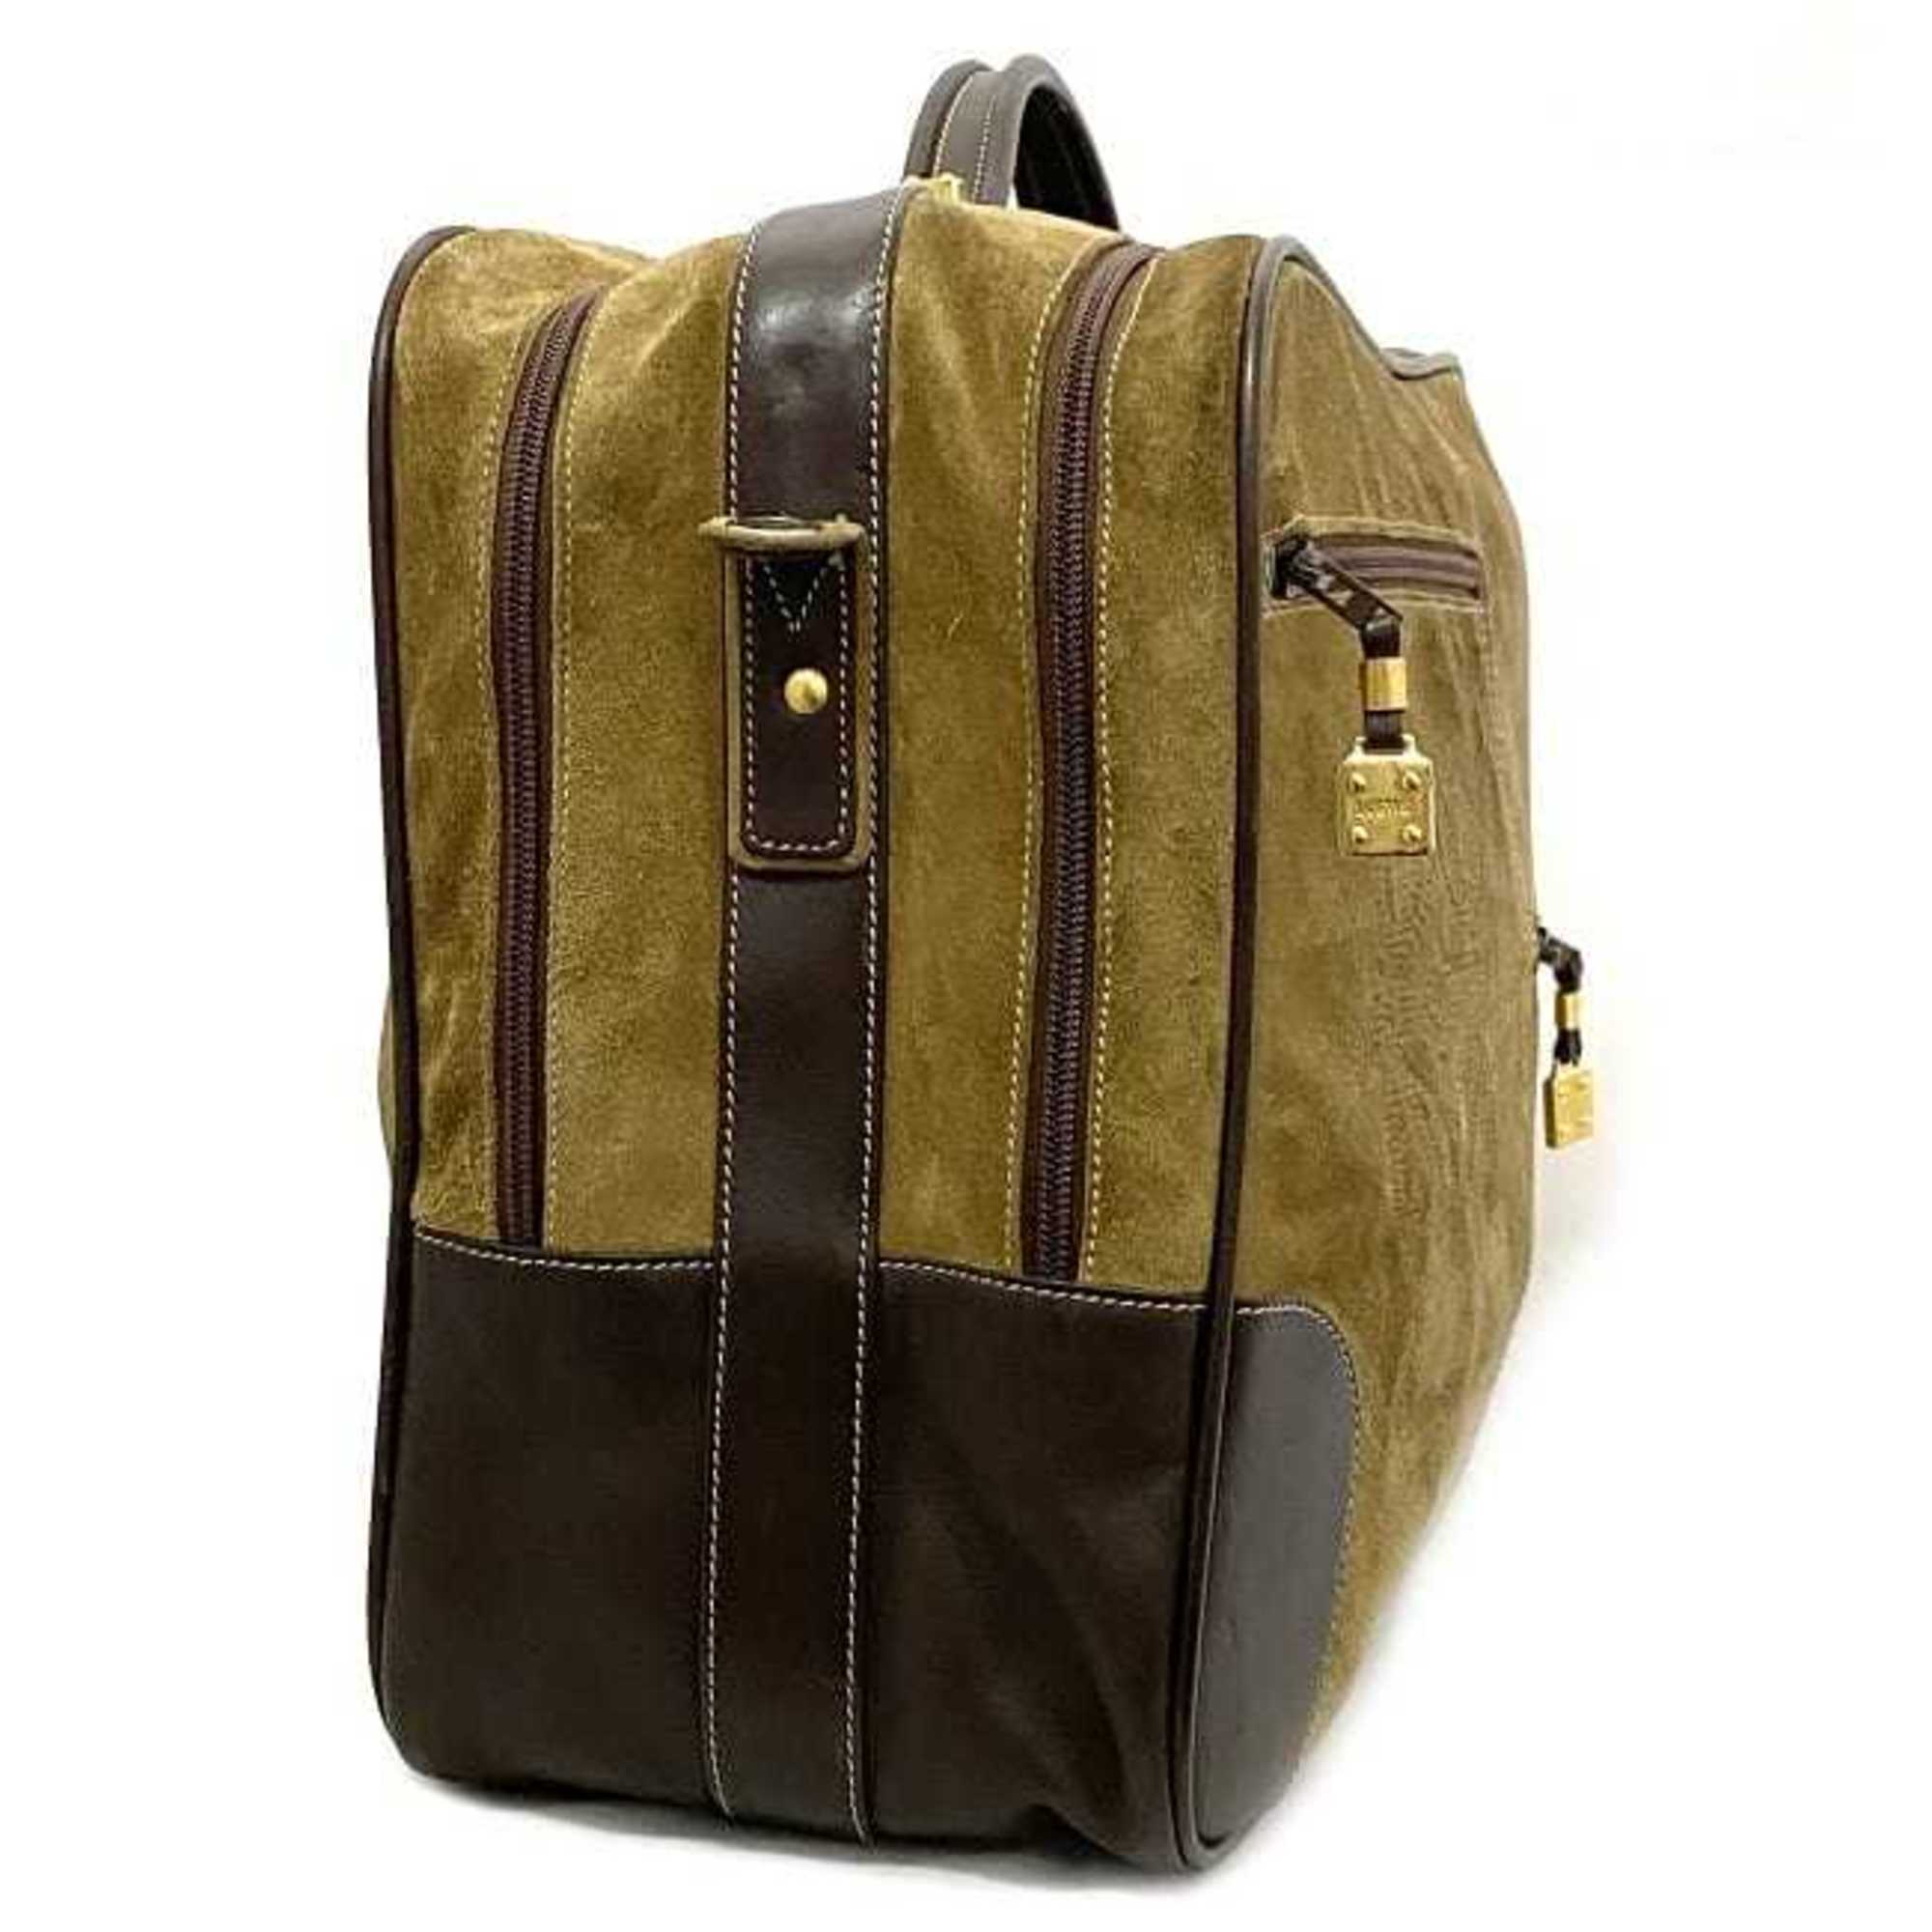 Loewe 2way Boston bag beige brown anagram suede leather LOEWE handbag shoulder